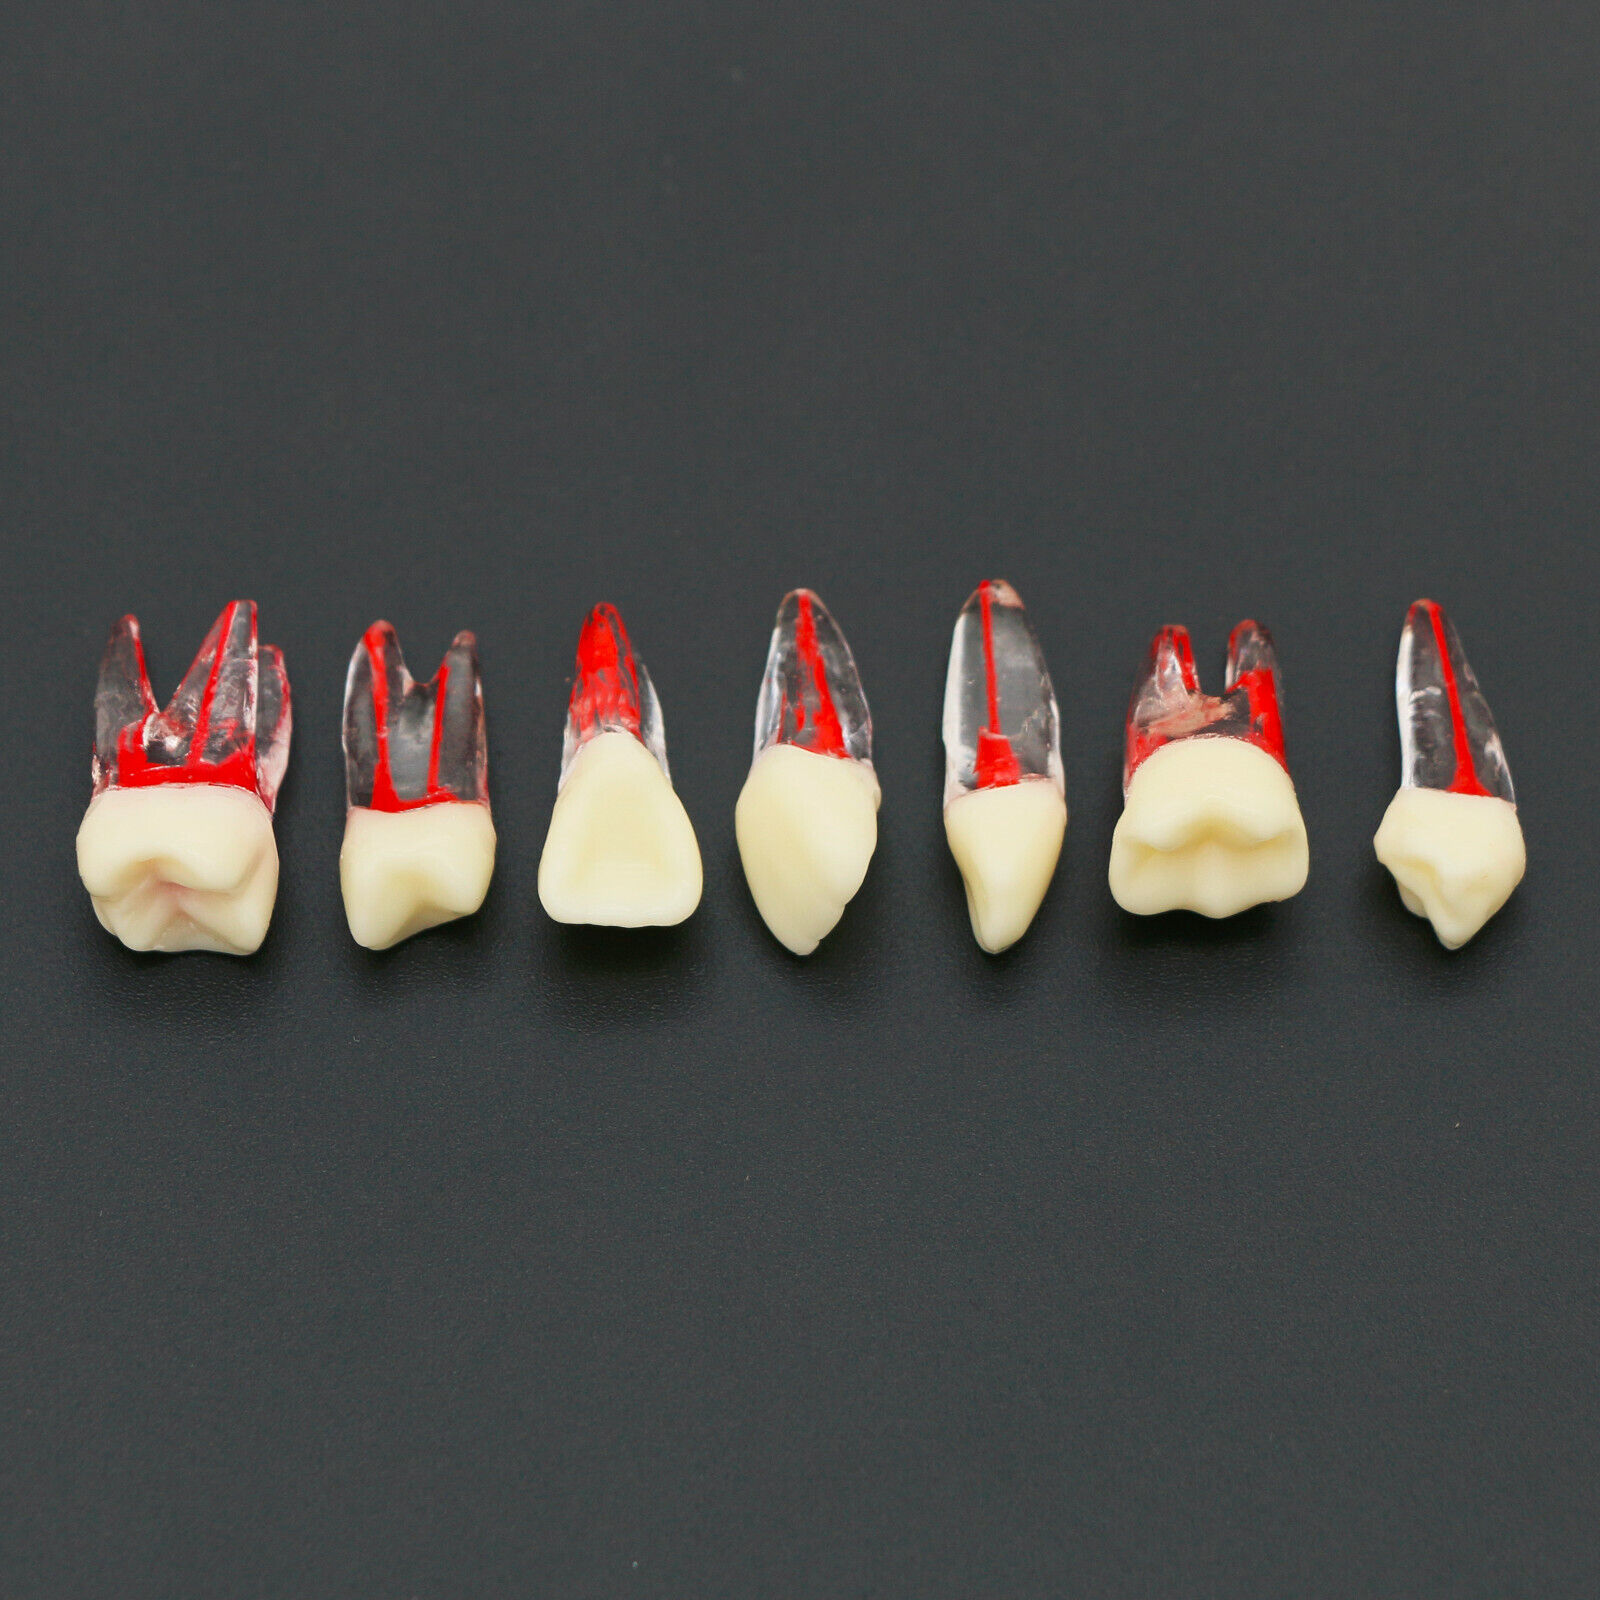 10Pcs Modelo de dientes Endodoncia para práctica de conducto radicular dental